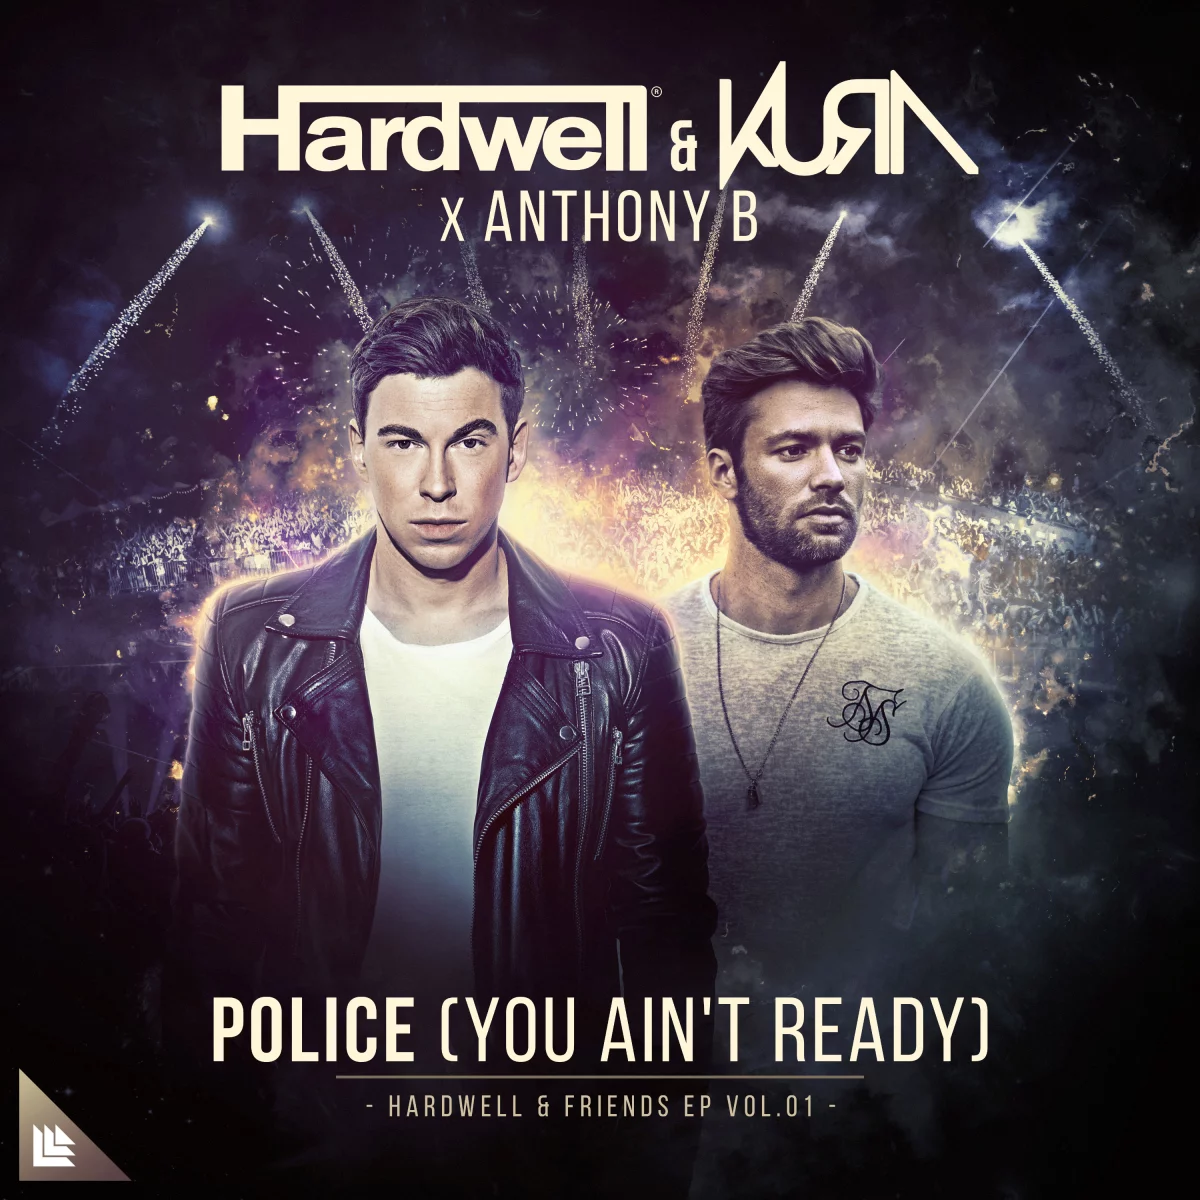 Police (You Ain't Ready) - Hardwell & KURA feat. Anthony B